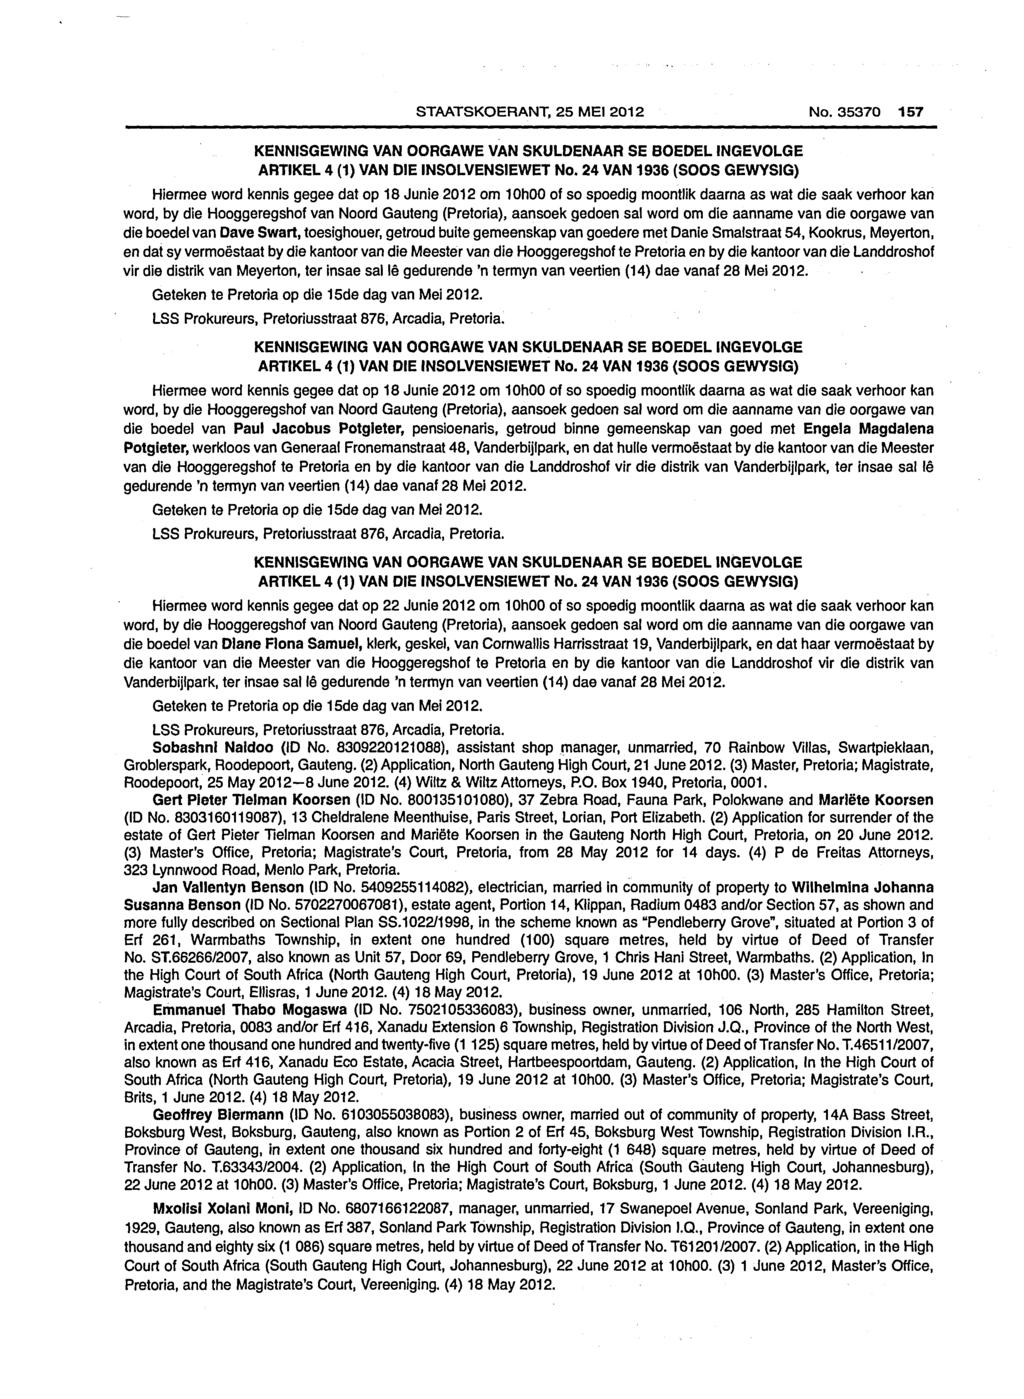 STAATSKOERANT, 25 MEI 2012 No. 35370 157 KENNISGEWING VAN OORGAWE VAN SKULDENAAR SE BOEDELINGEVOLGE ARTIKEL 4 (1) VAN DIE INSOLVENSIEWET No.